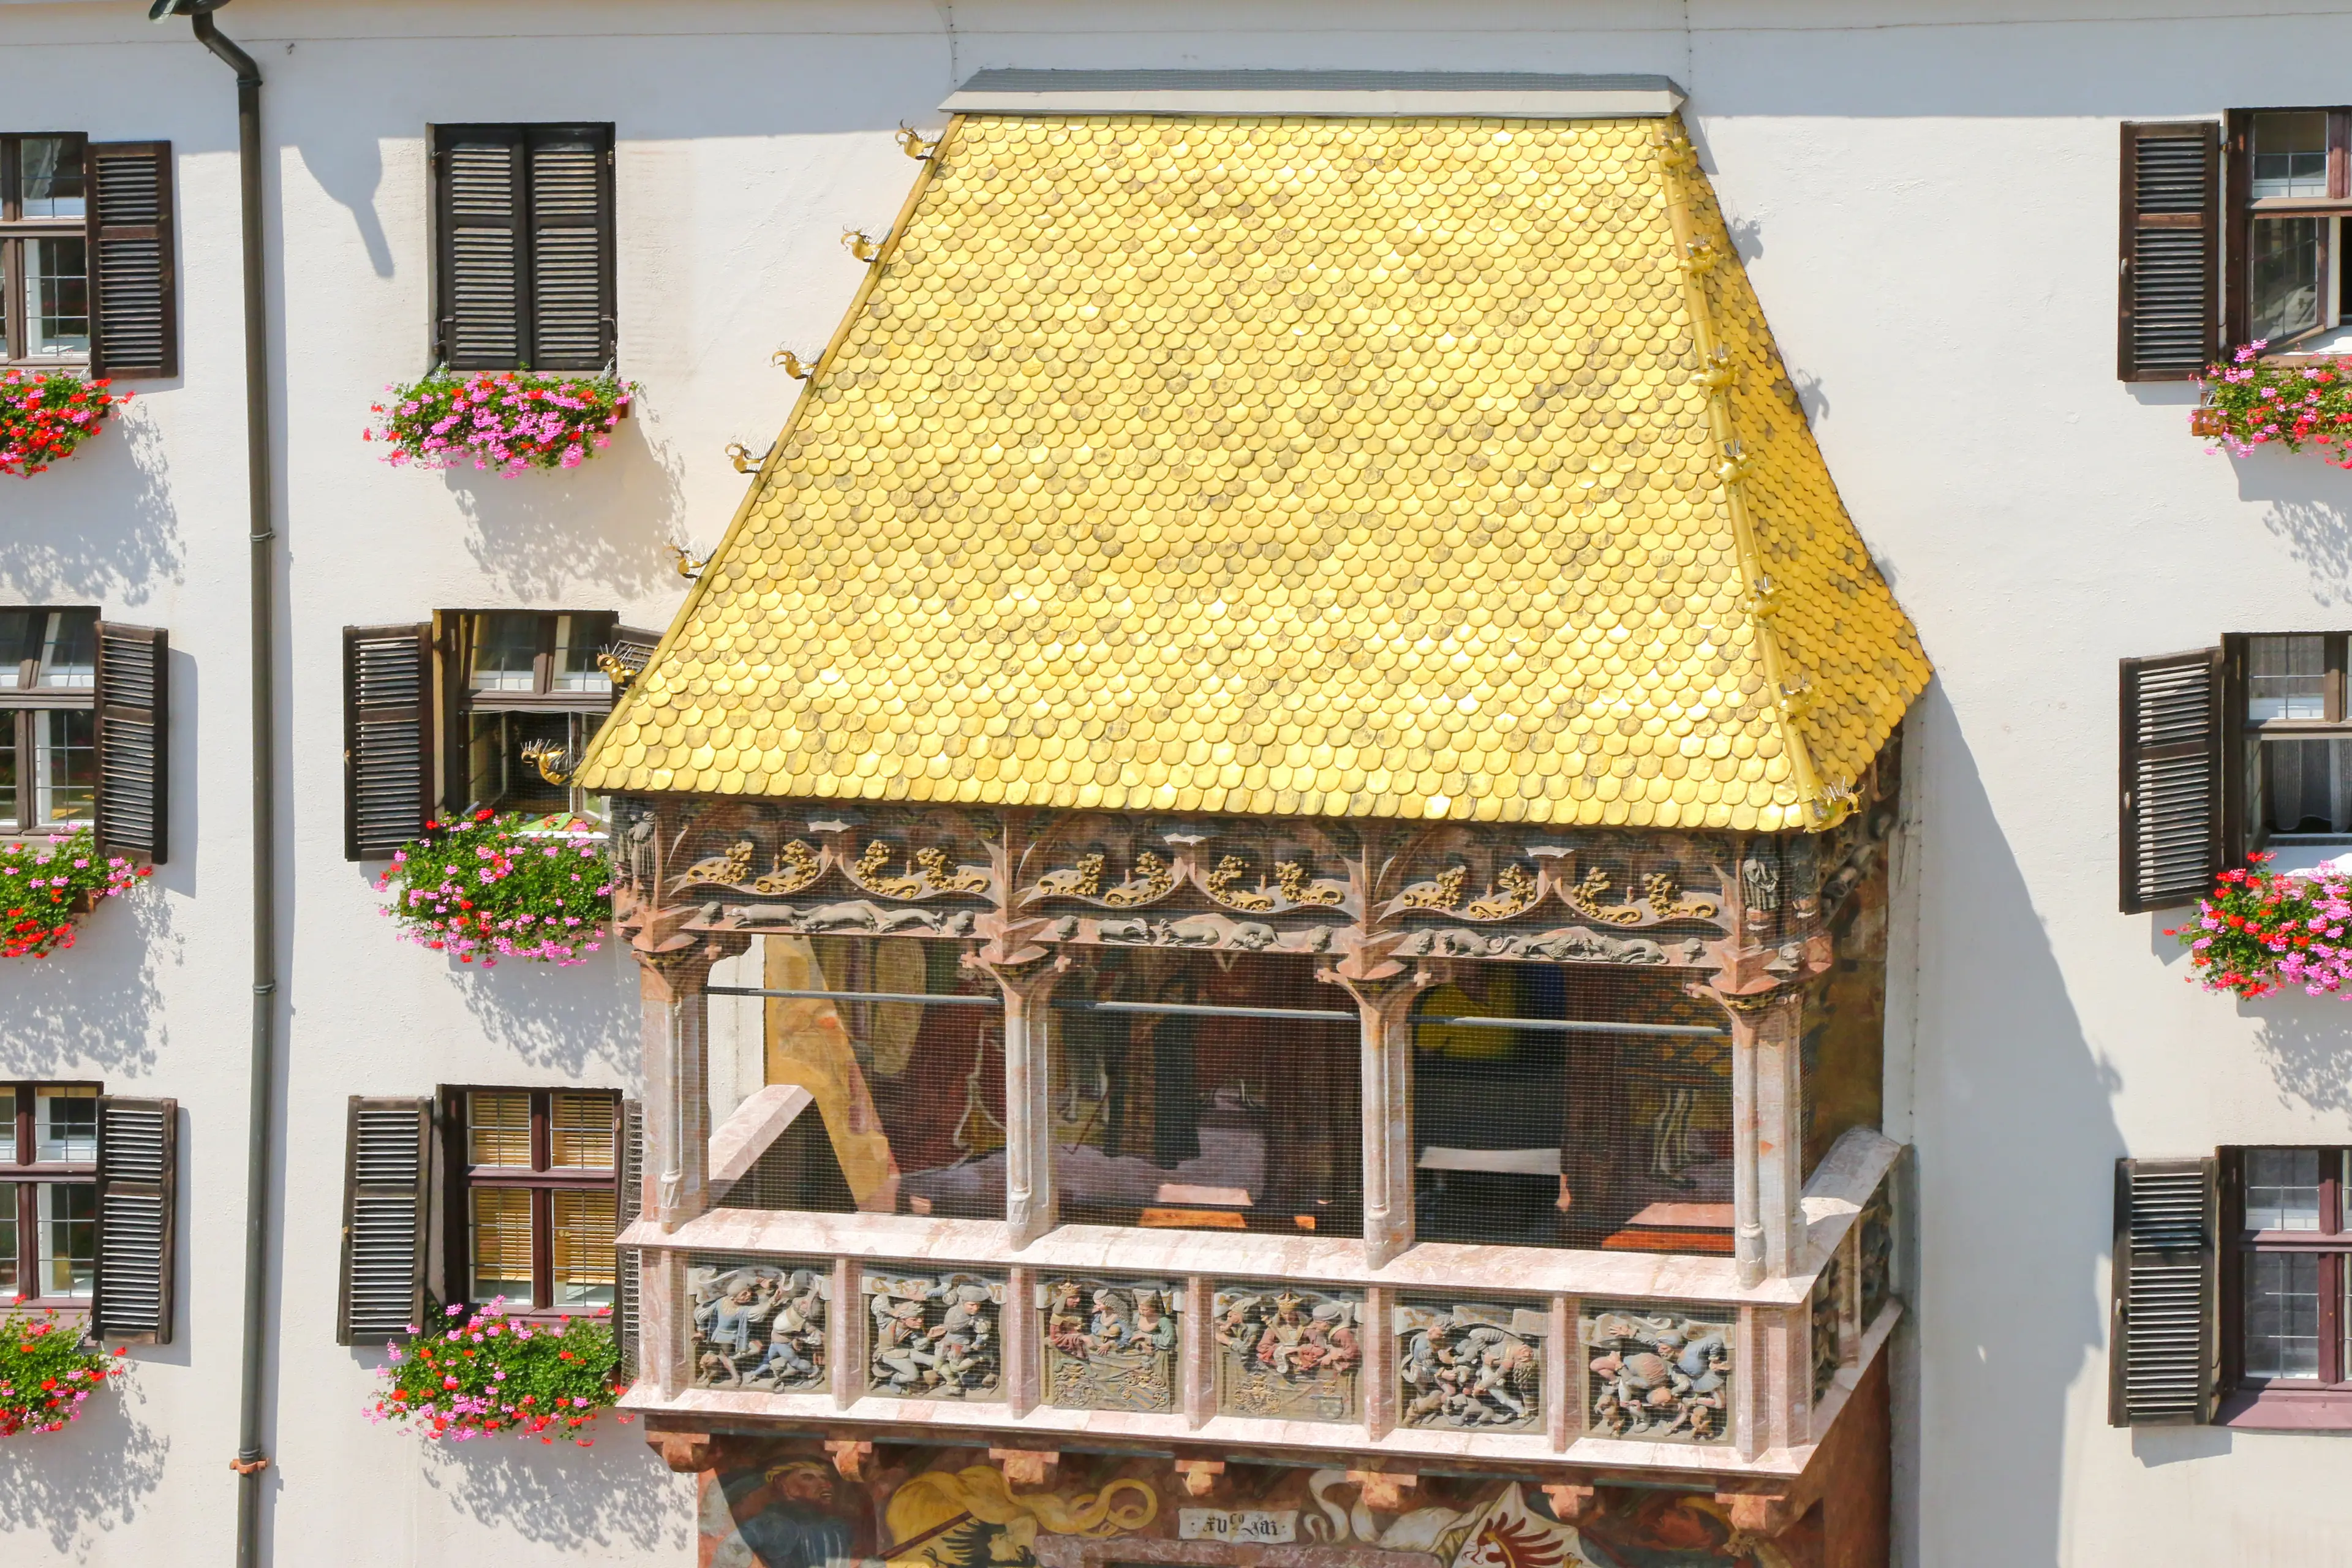 Golden Roof